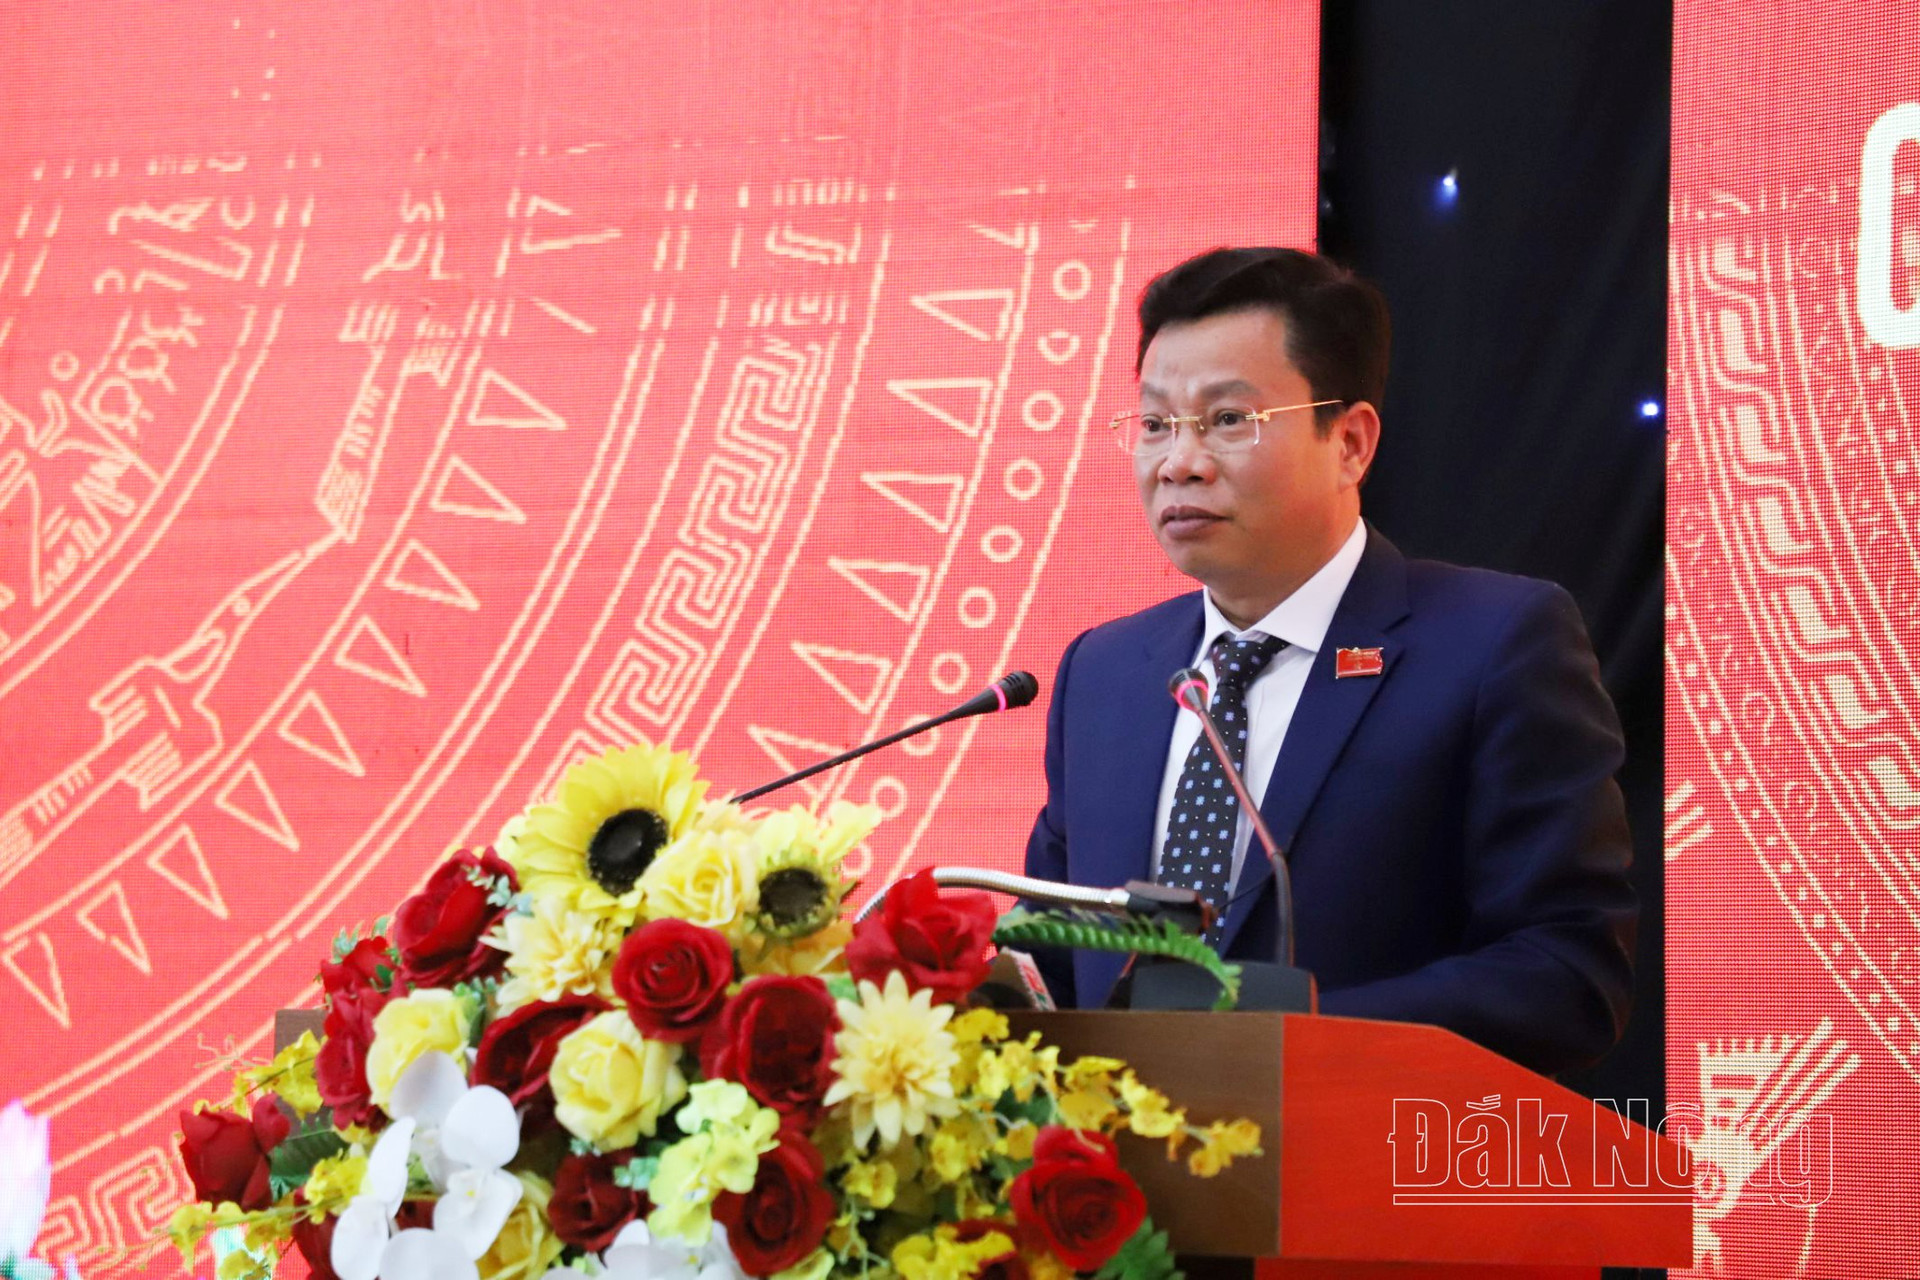 Đồng chí Lưu Văn Trung, Phó Bí thư Tỉnh ủy, Chủ tịch HĐND tỉnh Đắk Nông đề nghị các đơn vị liên quan thực hiện đúng tinh thần các nghị quyết đã được ban hành, bảo đảm các nghị quyết đi vào cuộc sống